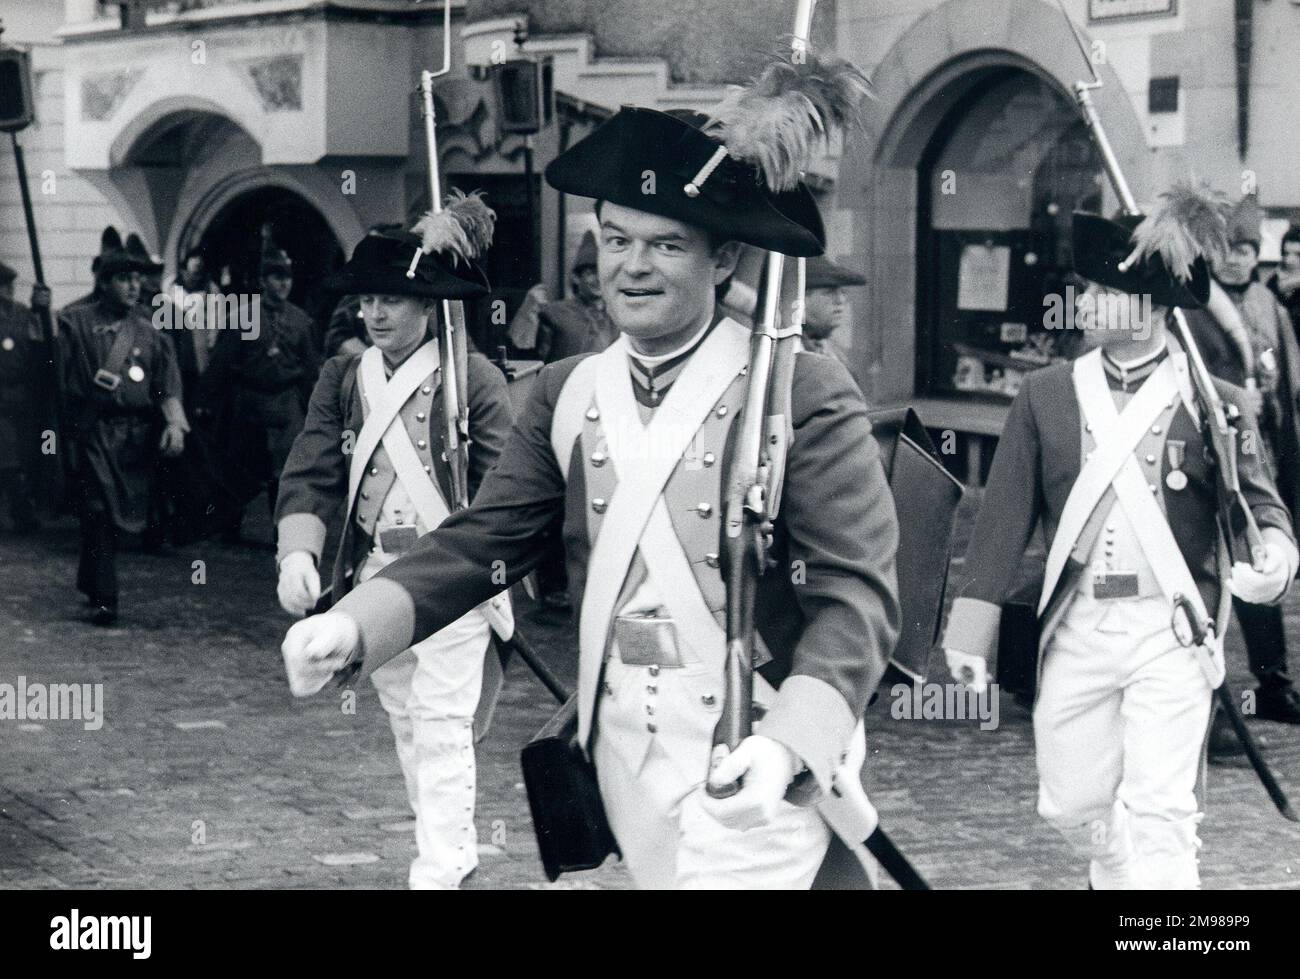 Männer in historischen Militärkostümen, marschieren durch ein street.in Luzern, Schweiz. Stockfoto